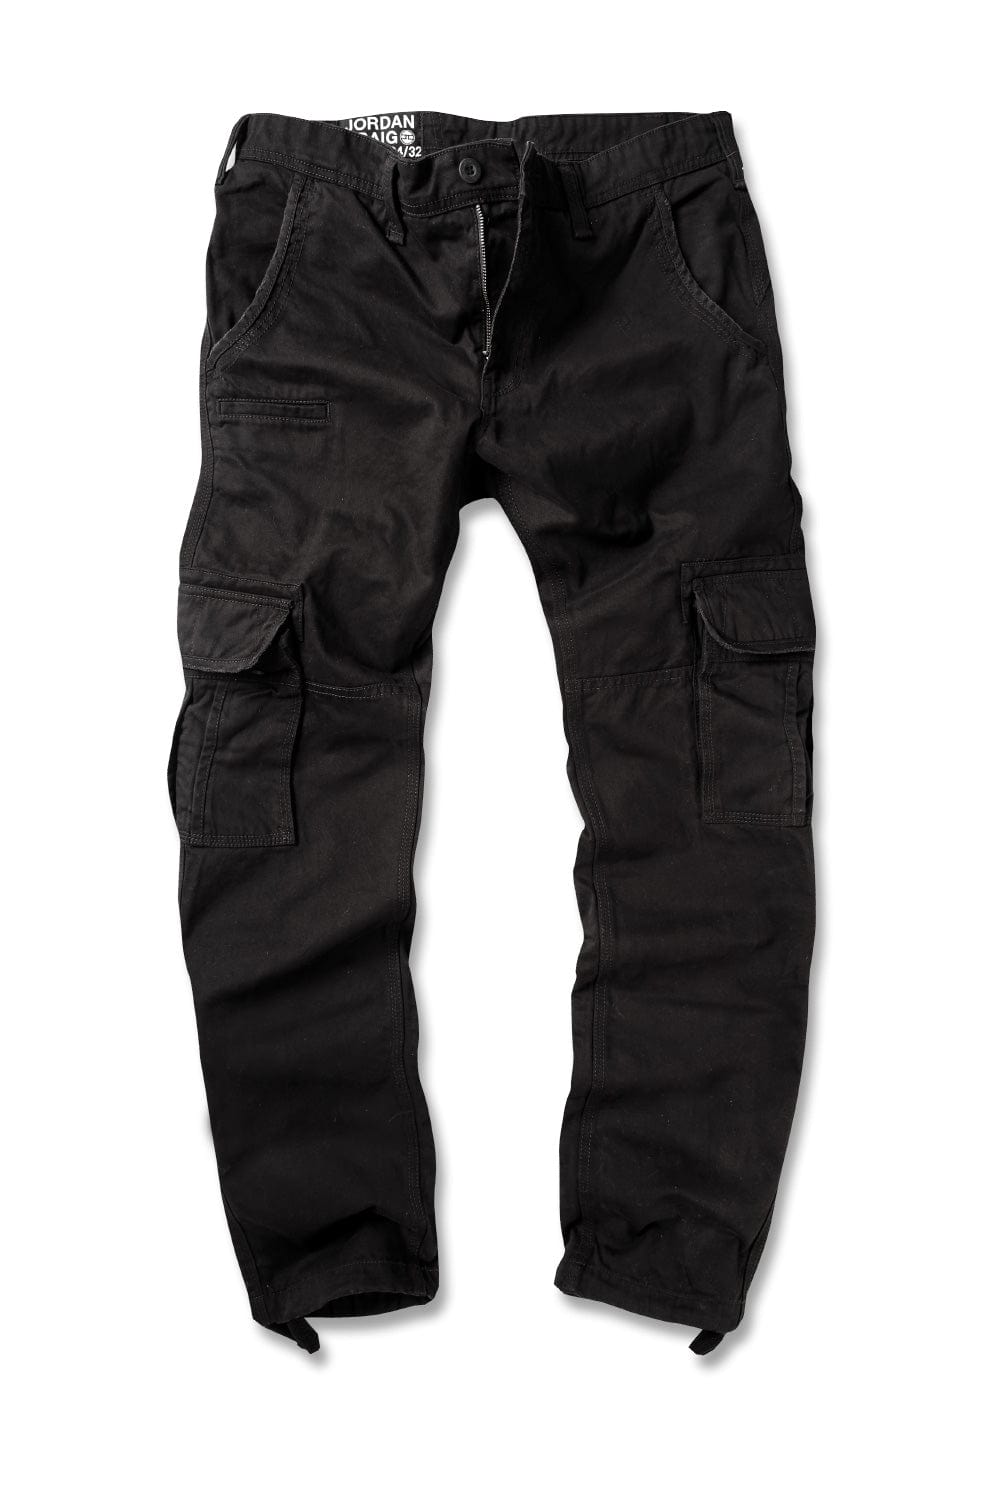 Xavier - OG Cargo Pants (Black)